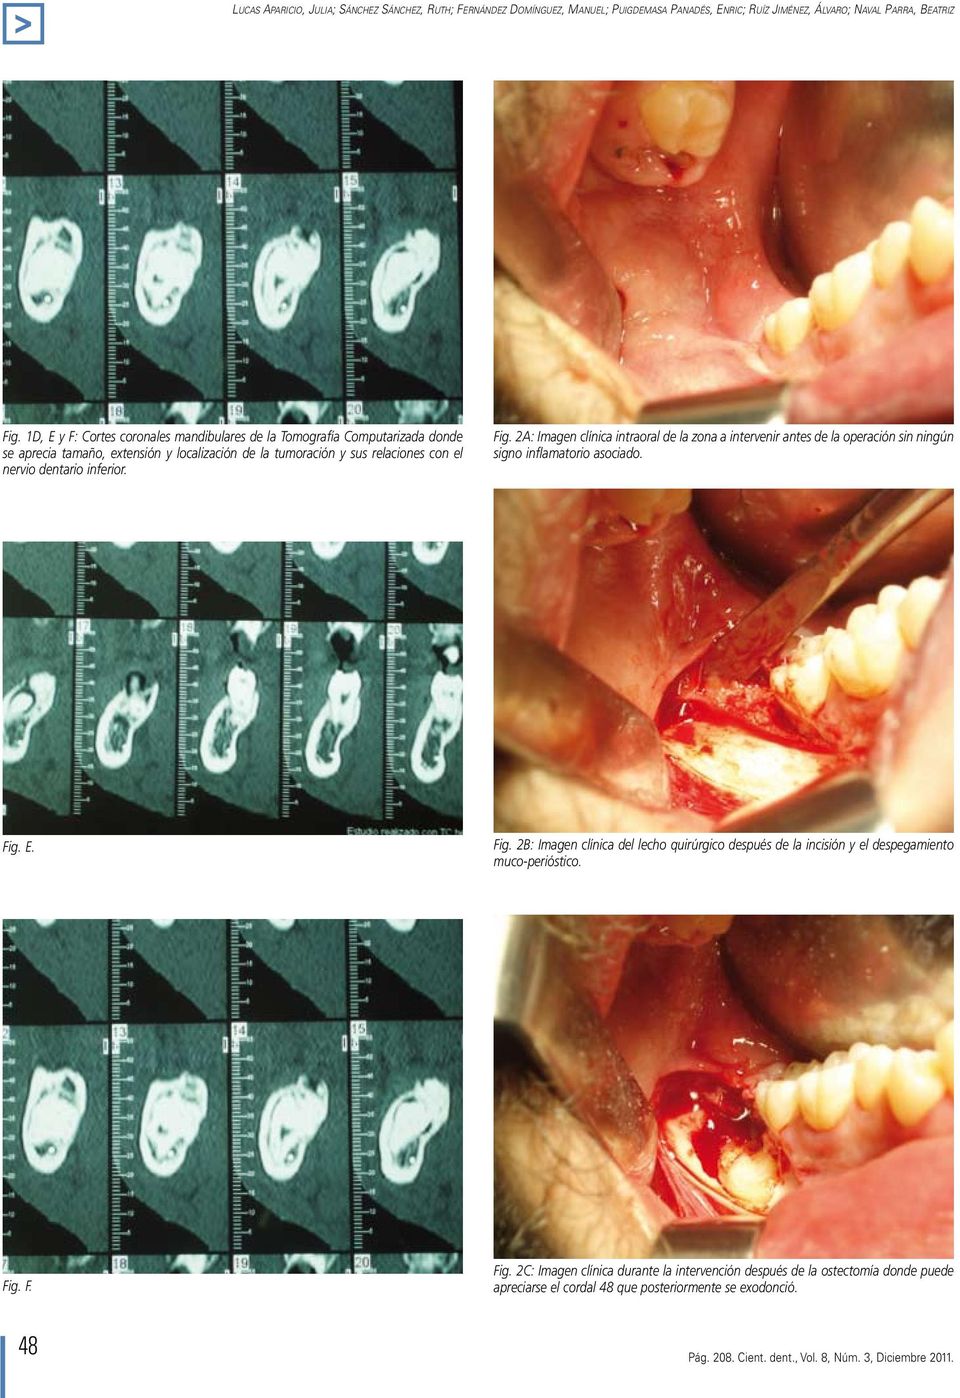 2A: Imagen clínica intraoral de la zona a intervenir antes de la operación sin ningún signo inflamatorio asociado. Fig.